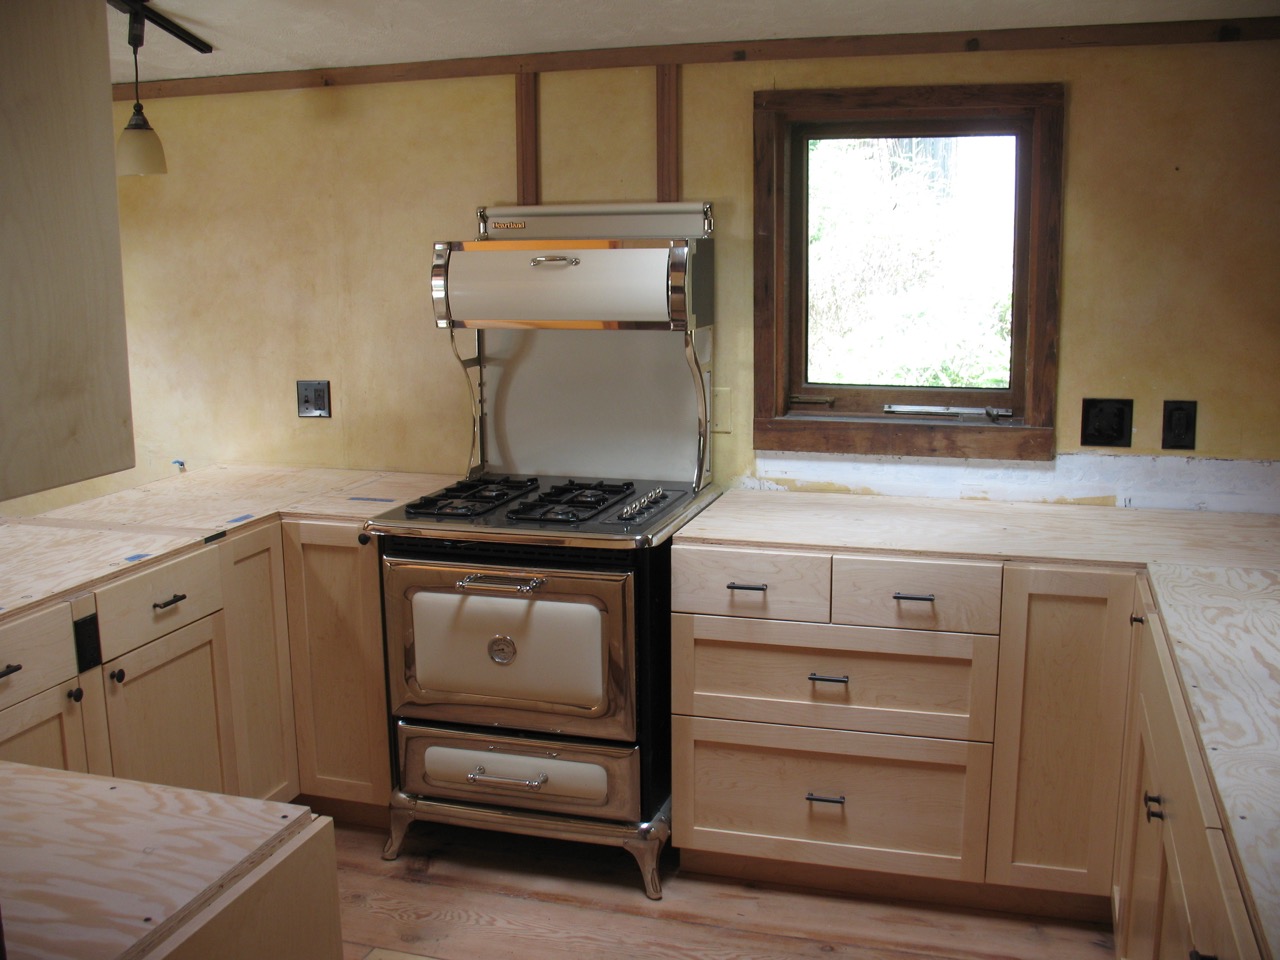 Kitchen cabinetry, faux paint, trim